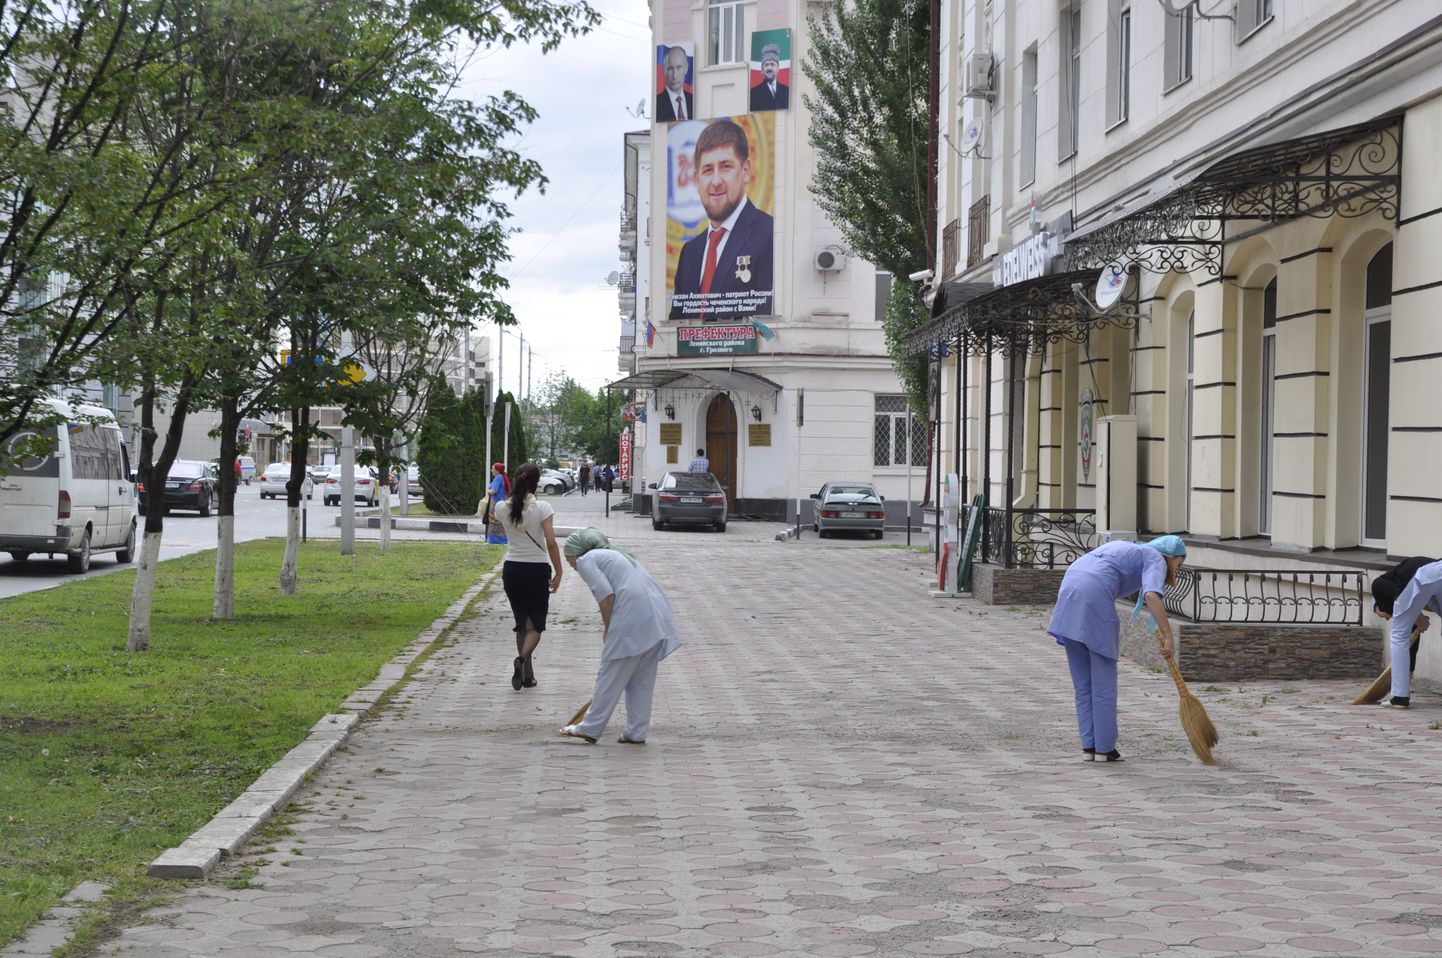 Порядок в доме! Под охраной весящего на стене управы одной из частей Грозного портрета Рамзана Кадырова, работники поликлиники подметают улицу.